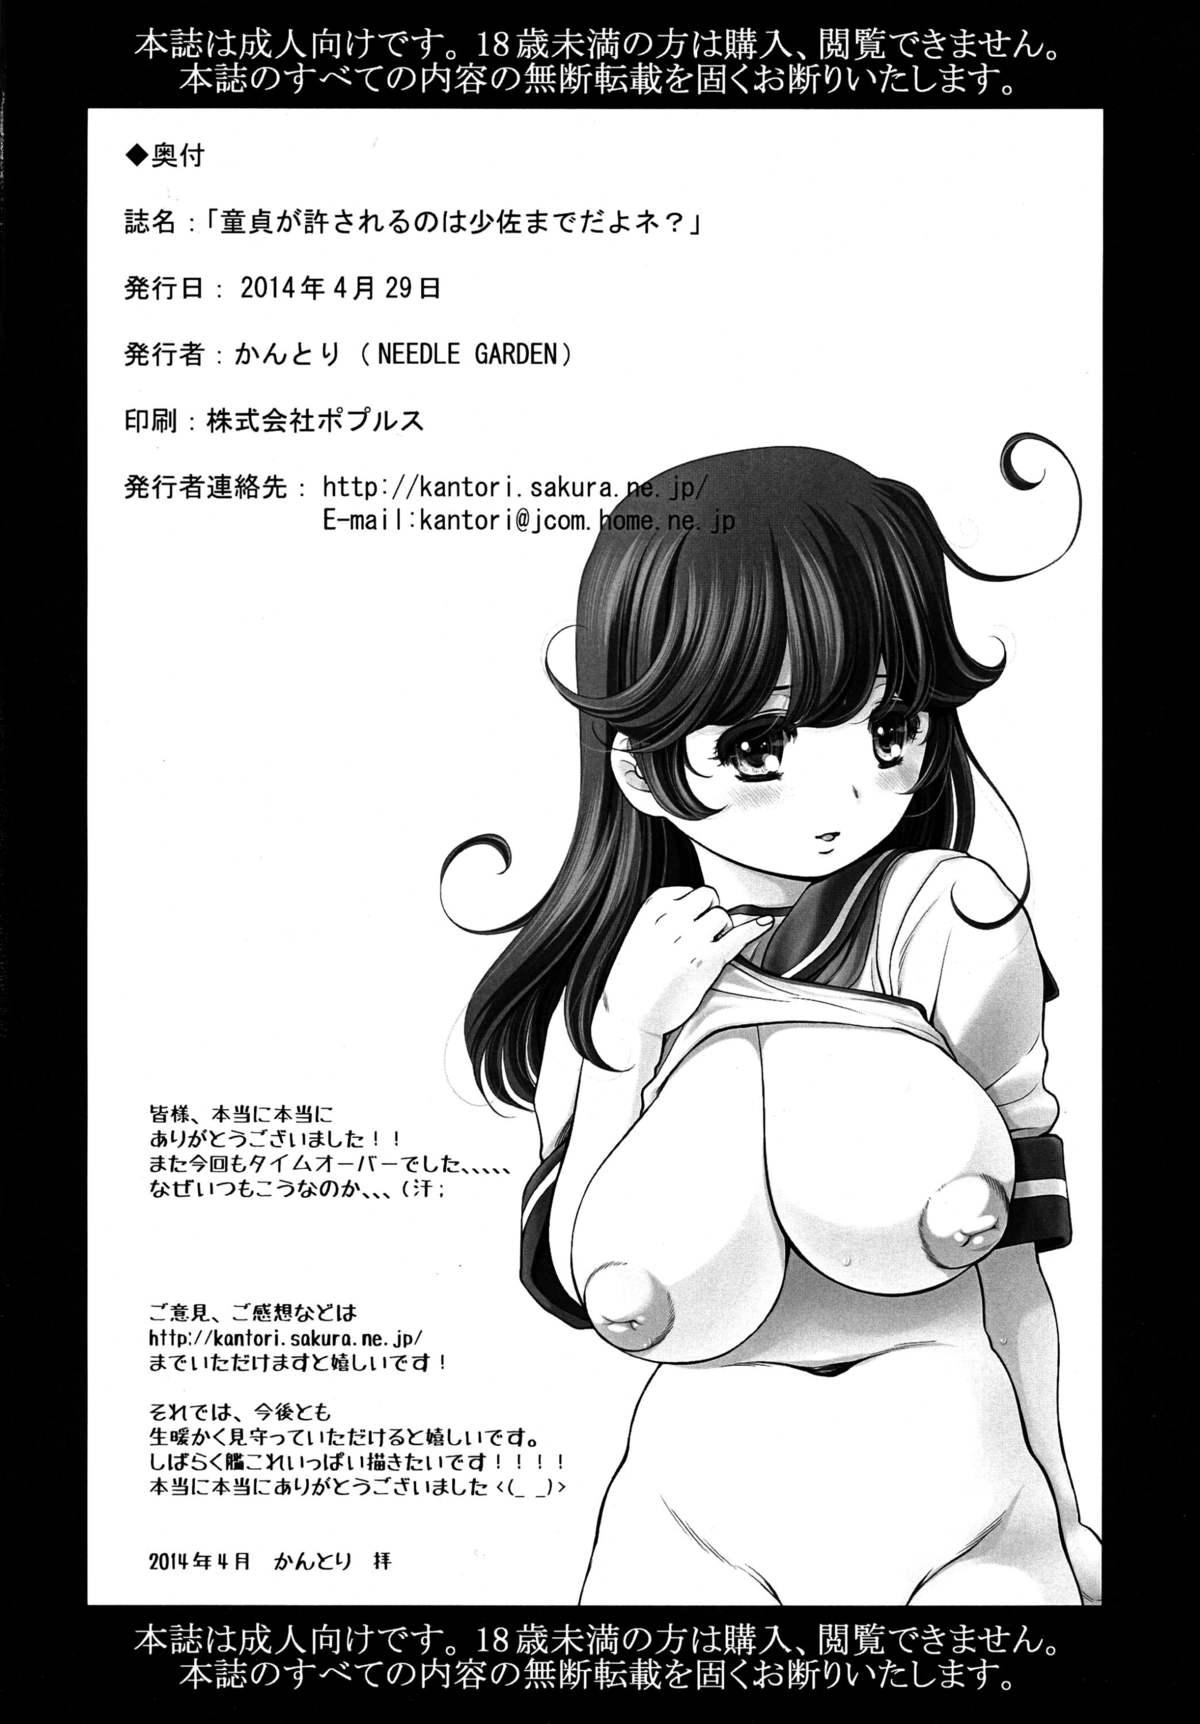 Francaise Doutei ga Yurusareru no wa Shousa made dayo ne? - Kantai collection Plumper - Page 26